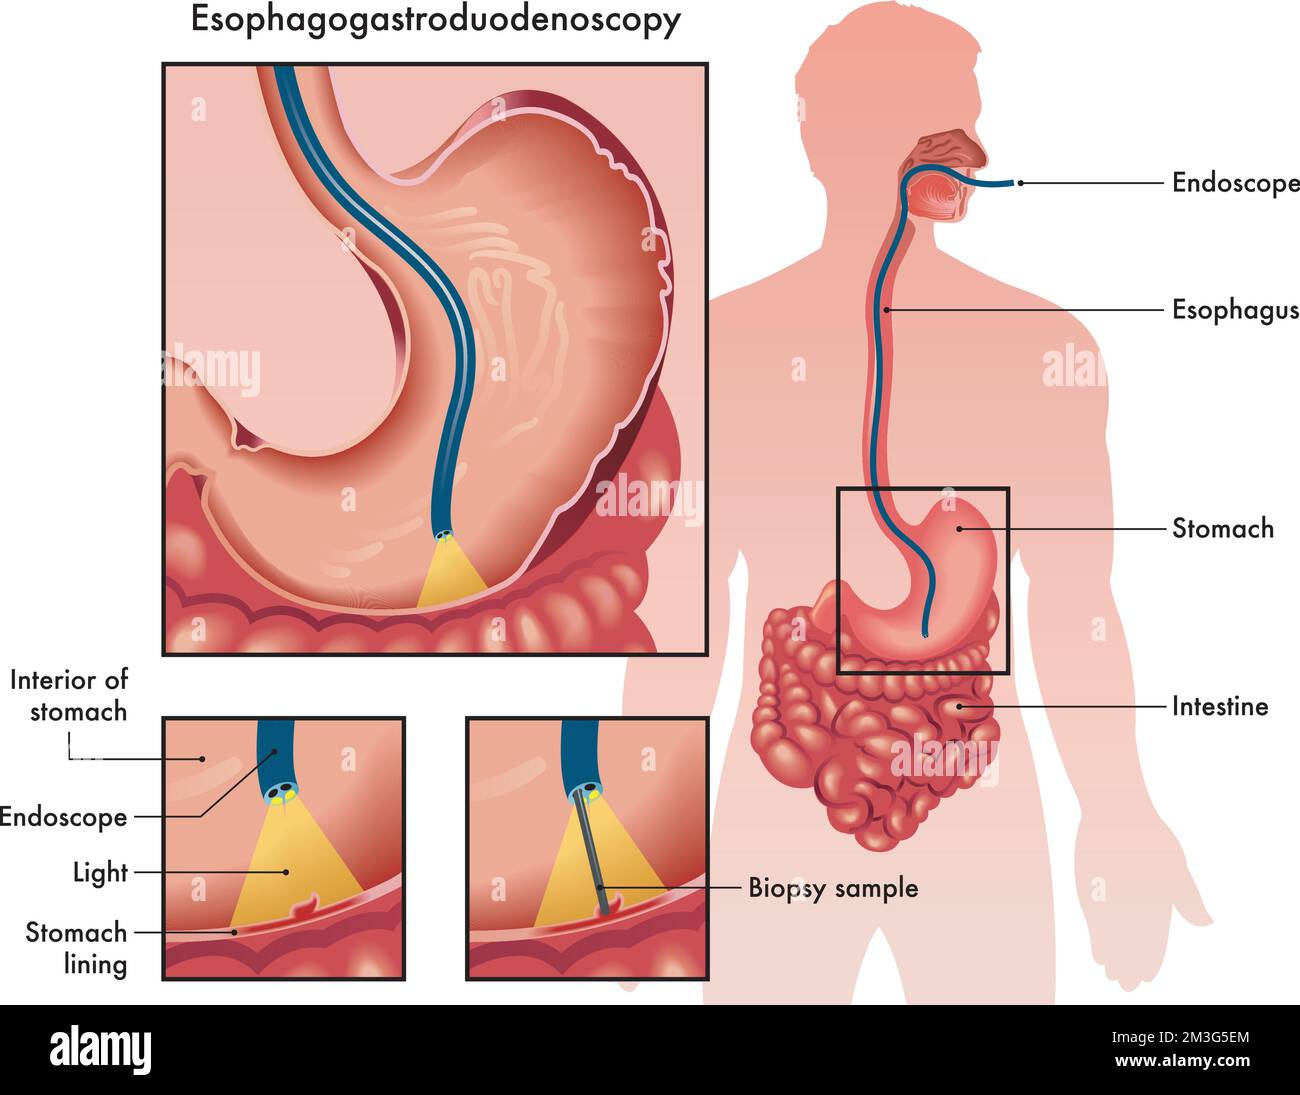 Illustrazione medica di un'esofagogastroduodenoscopia con due dettagli che mostrano la procedura e gli strumenti utilizzati, con annotazioni. Illustrazione Vettoriale